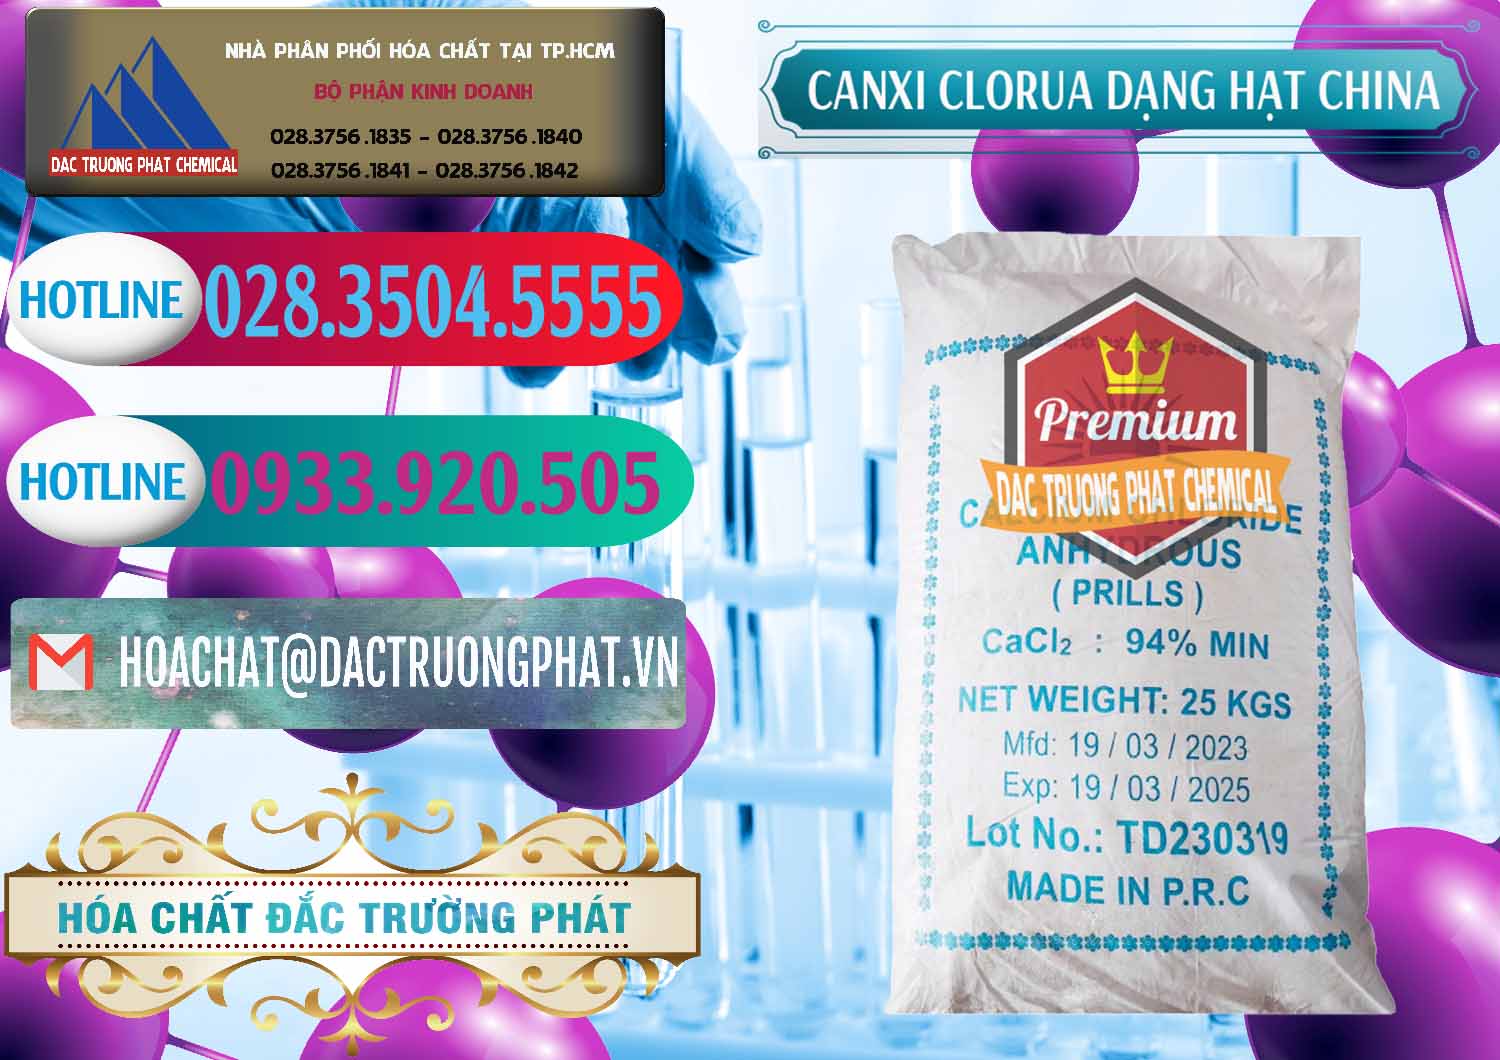 Công ty kinh doanh ( bán ) CaCl2 – Canxi Clorua 94% Dạng Hạt Trung Quốc China - 0373 - Chuyên phân phối và cung cấp hóa chất tại TP.HCM - truongphat.vn